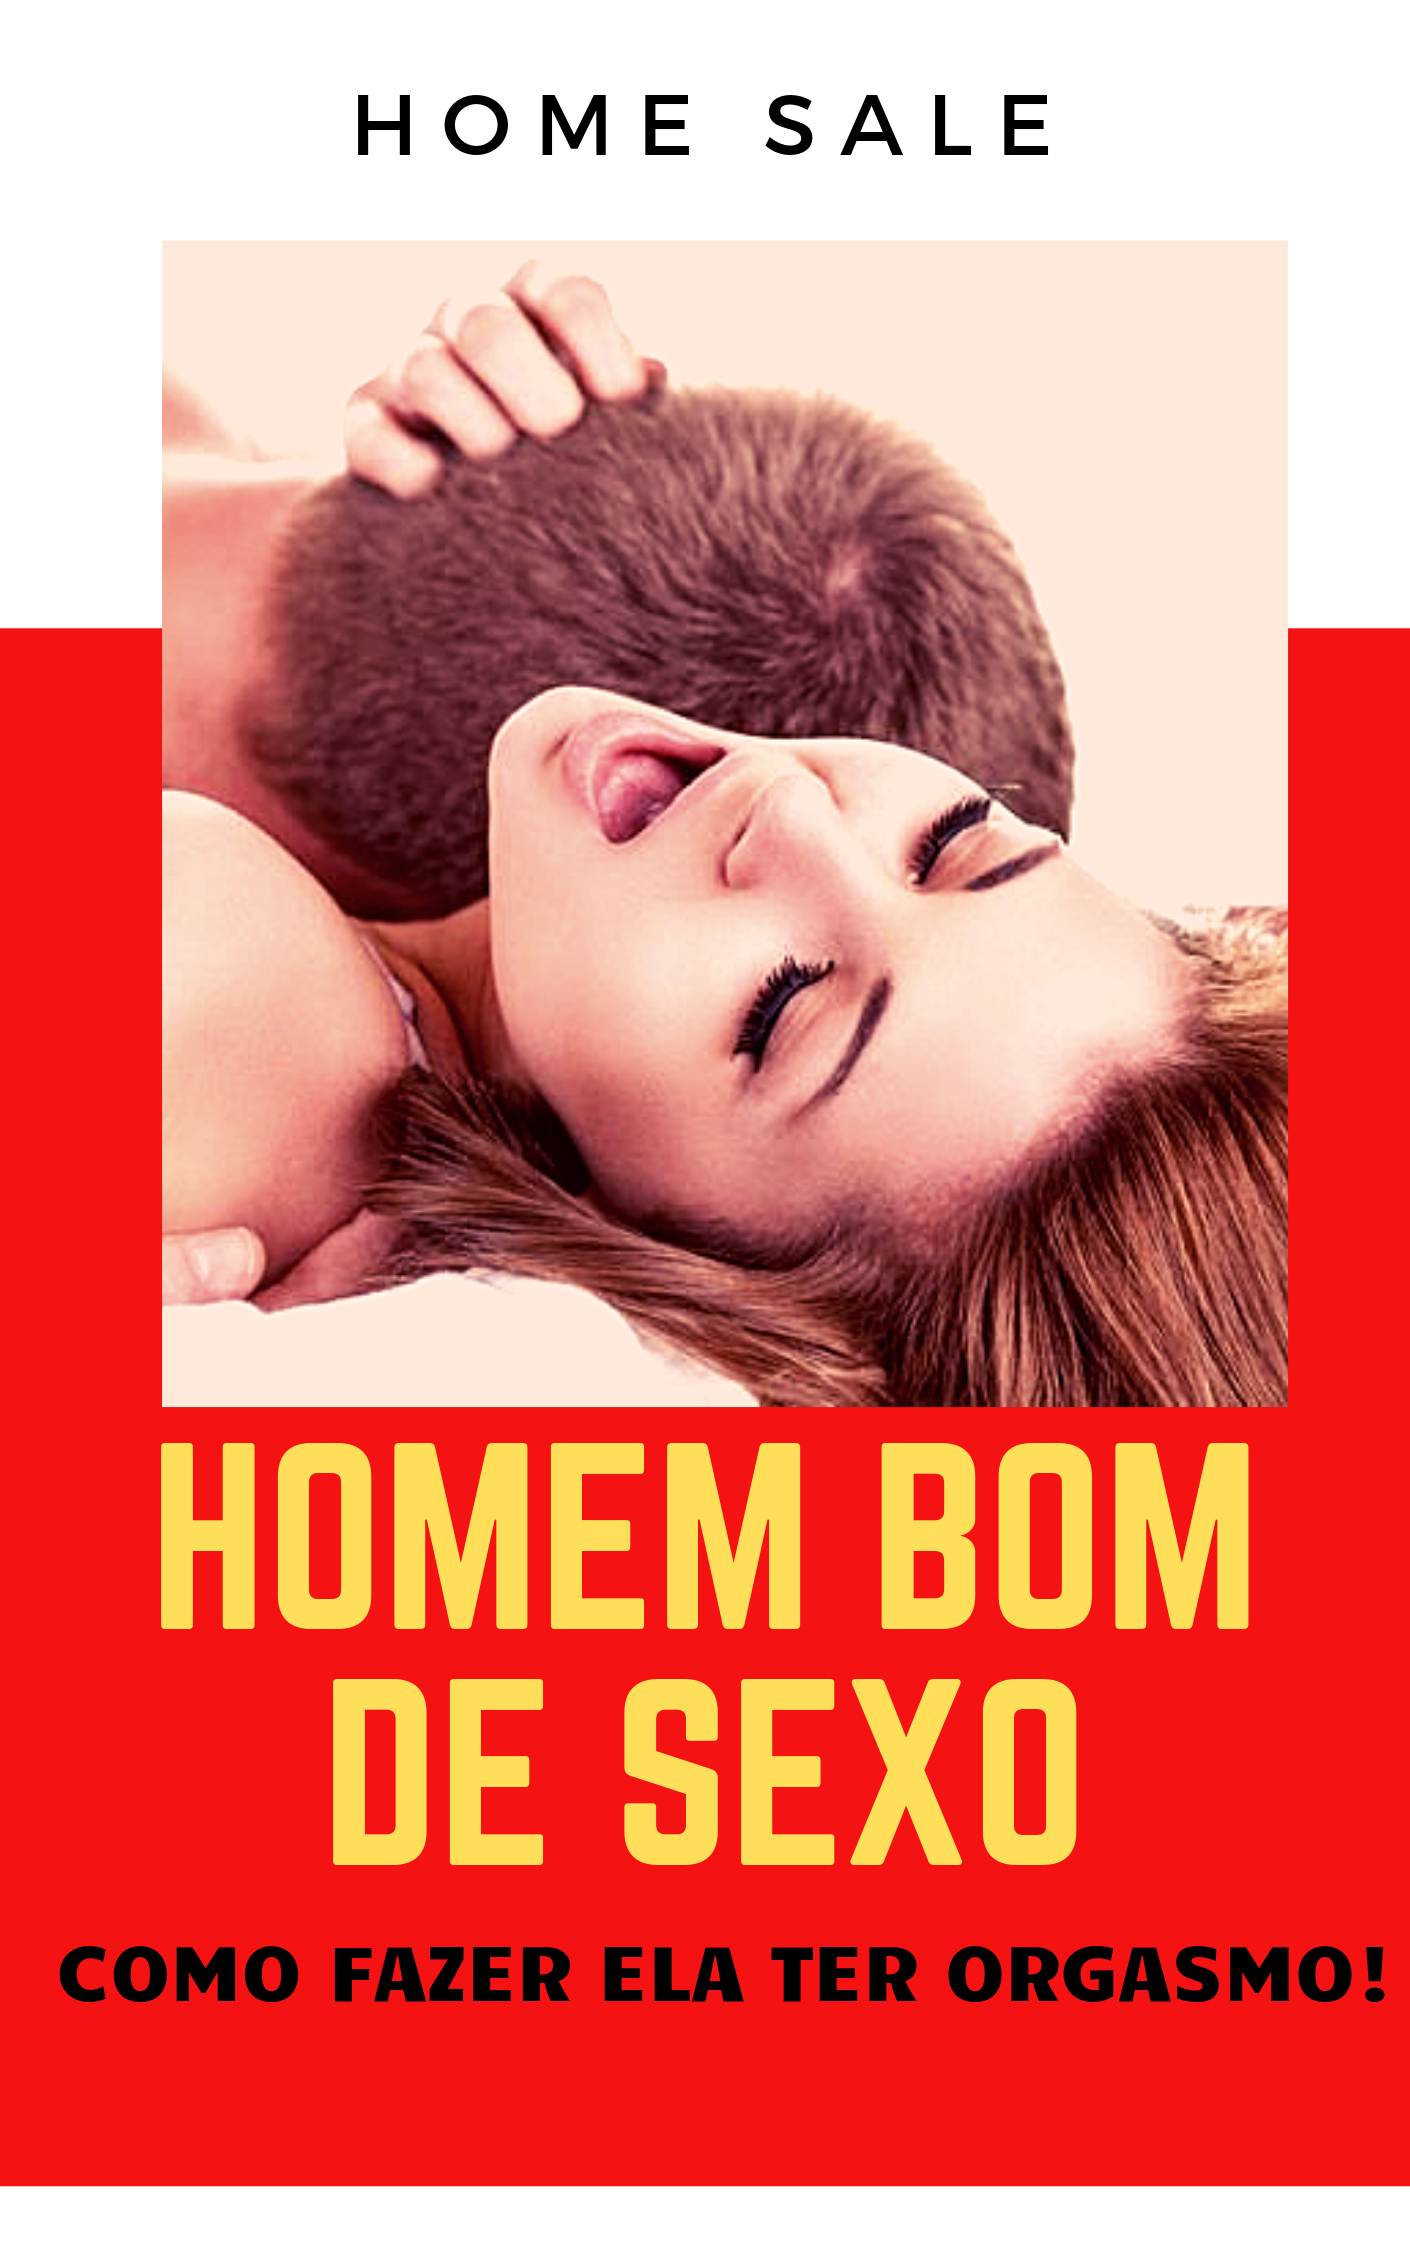 HOMEM BOM DE SEXO - GUIA DO ORGASMO